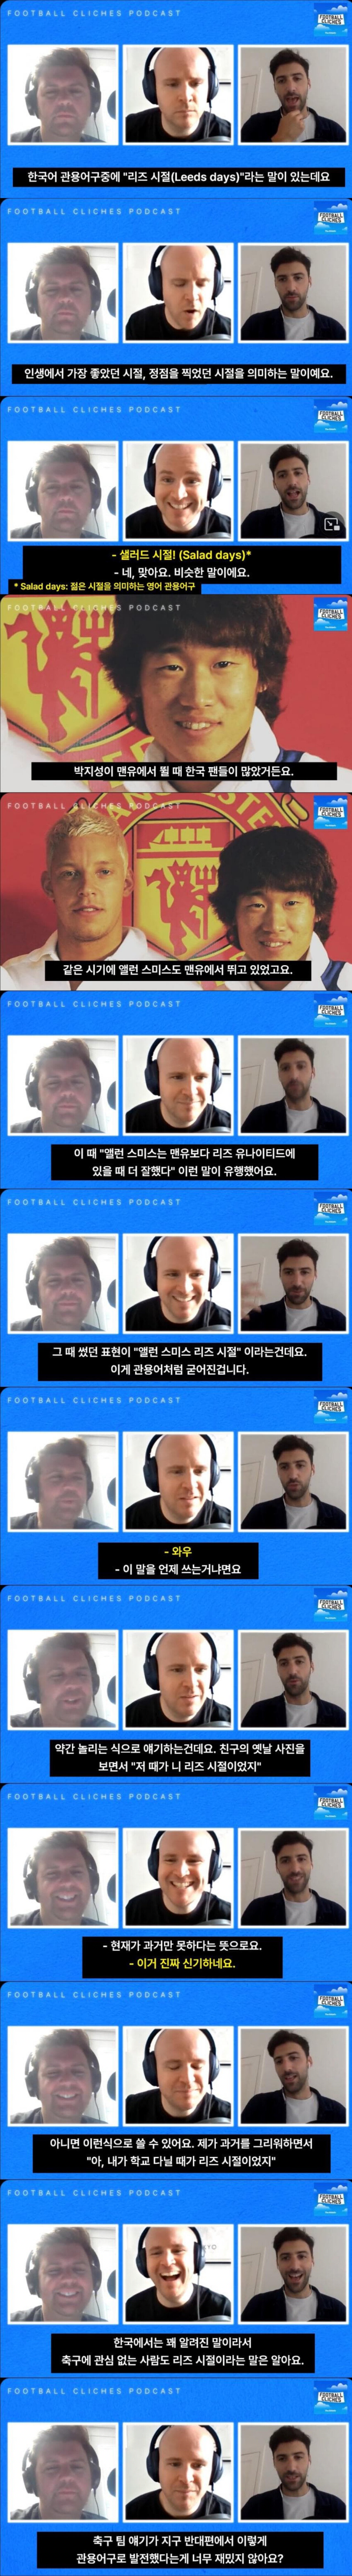 싱글벙글 한국 인터넷 용어를 배우는 영국 축구 팬들